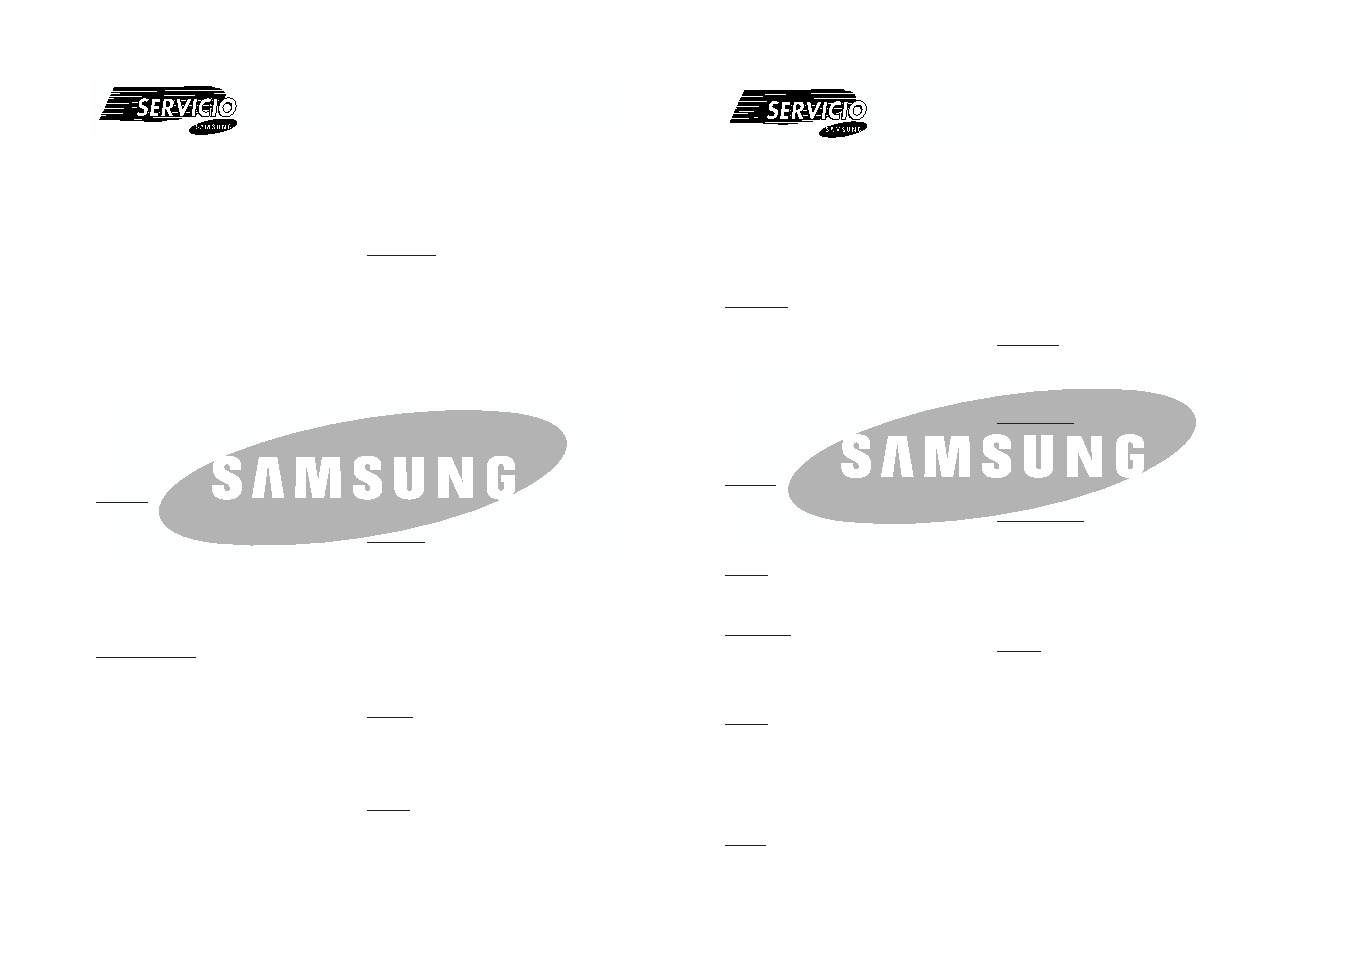 Samsung DVD-V8500 User Manual (ver.1.0)